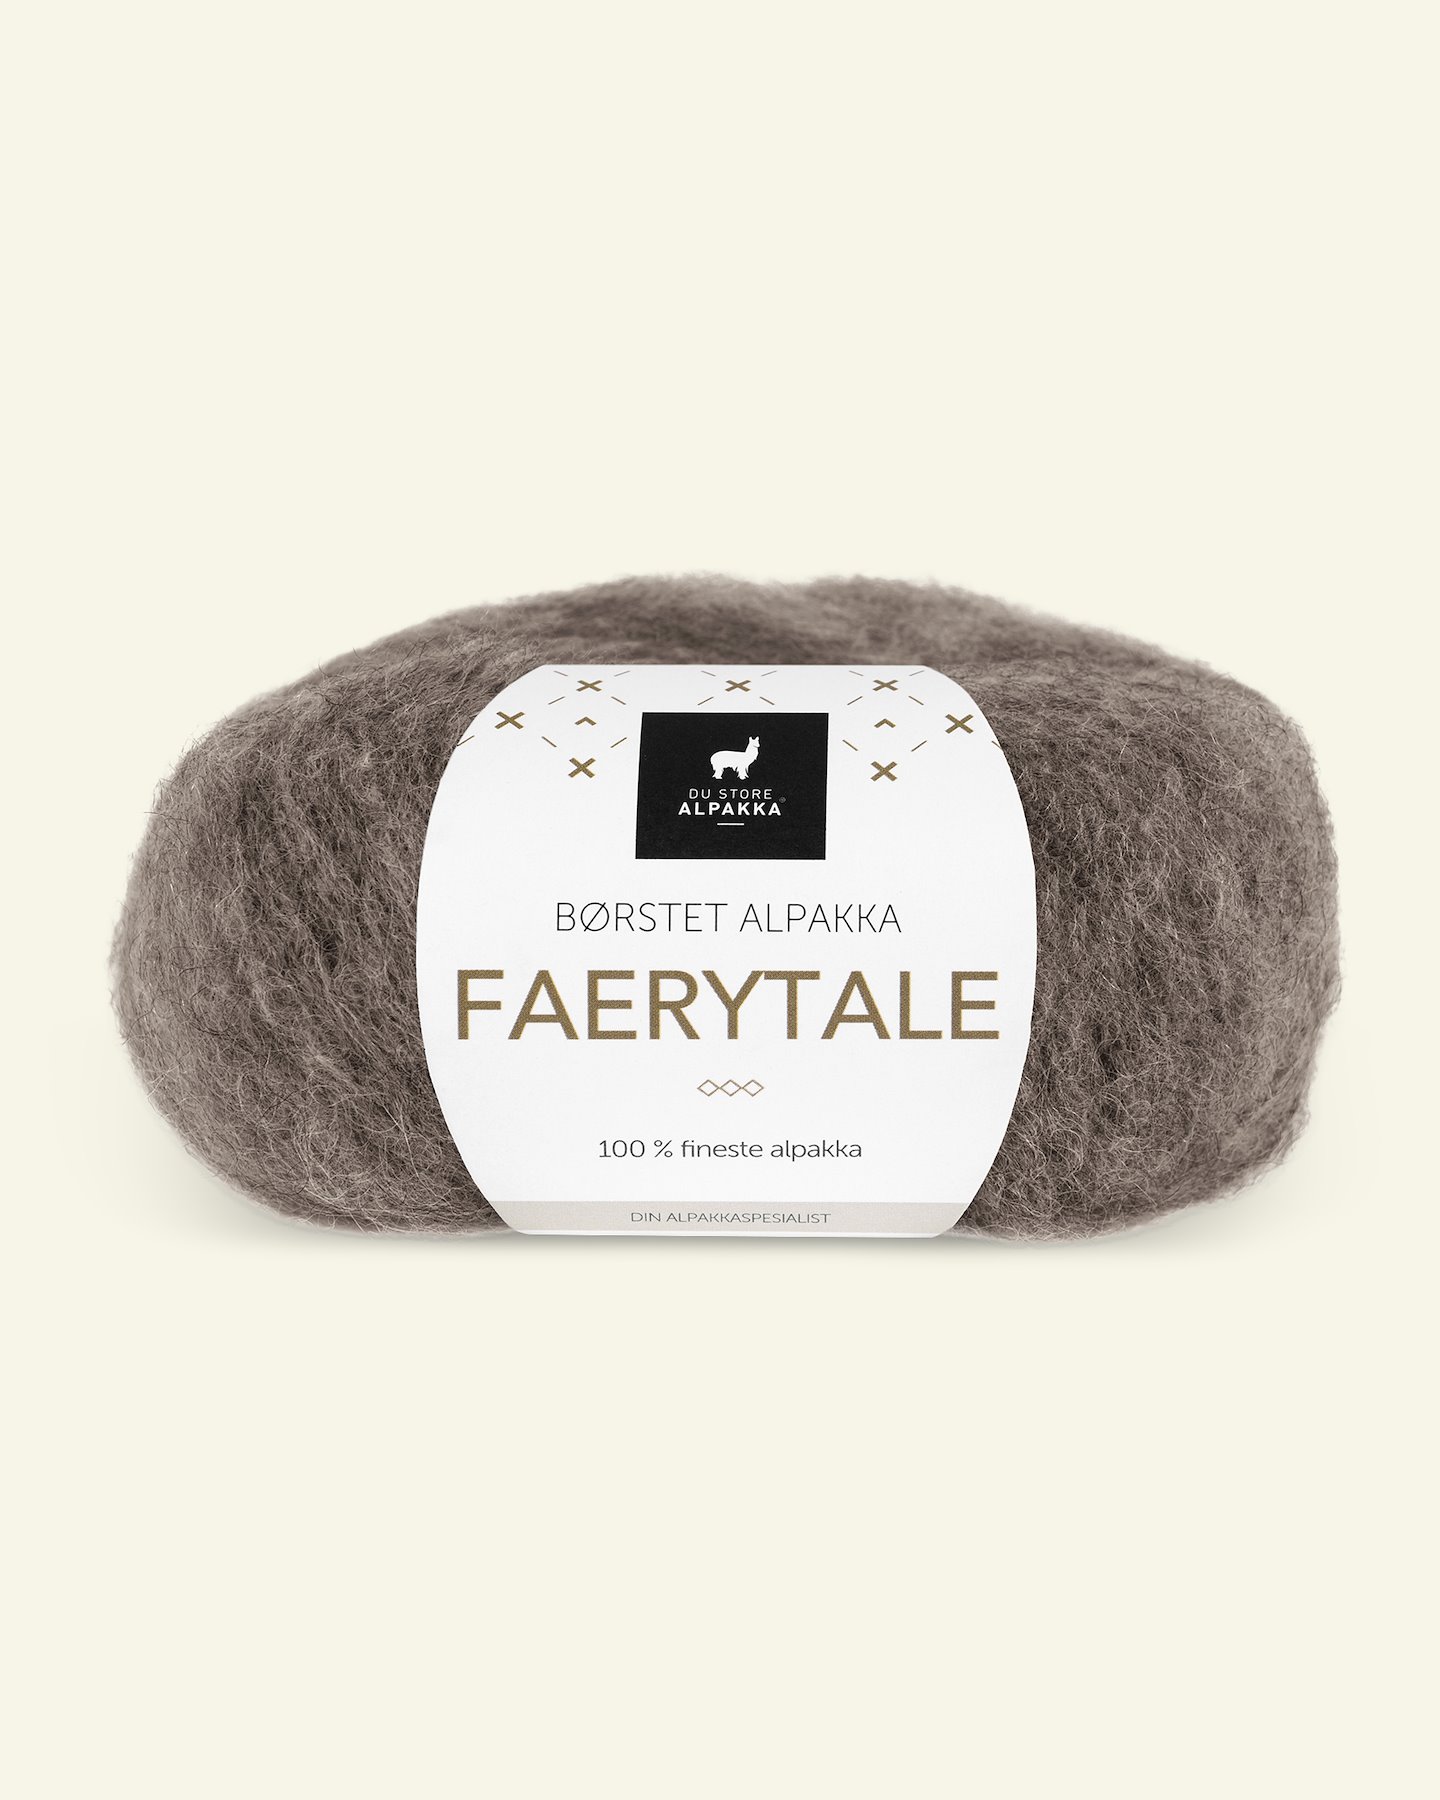 Du Store Alpakka, børsted alpakkagarn "Faerytale", mørk gråbrun (726) 90000585_pack